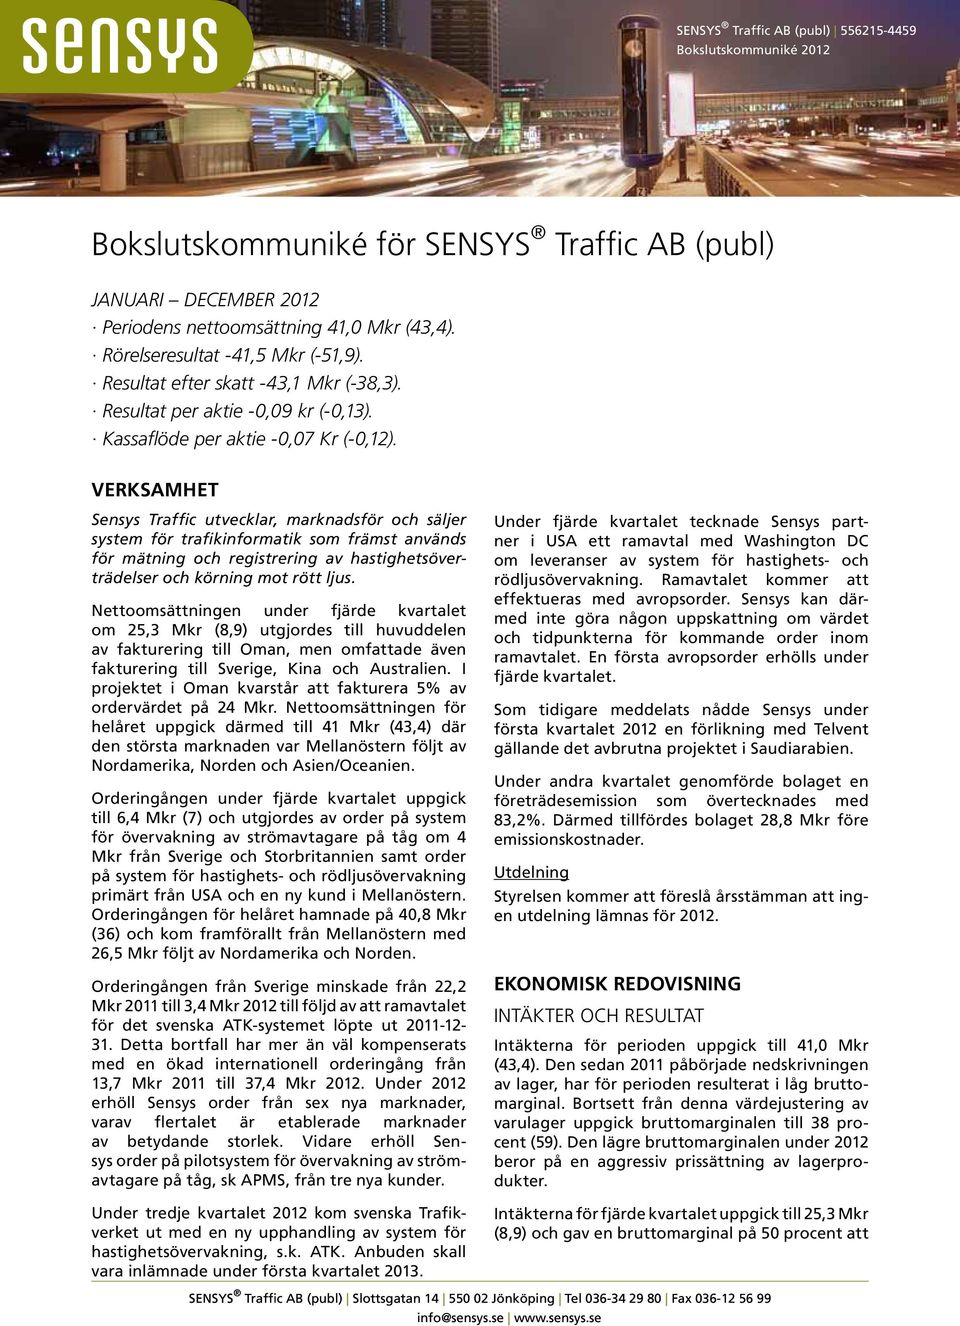 Verksamhet Sensys Traffic utvecklar, marknadsför och säljer system för trafikinformatik som främst används för mätning och registrering av hastighetsöverträdelser och körning mot rött ljus.